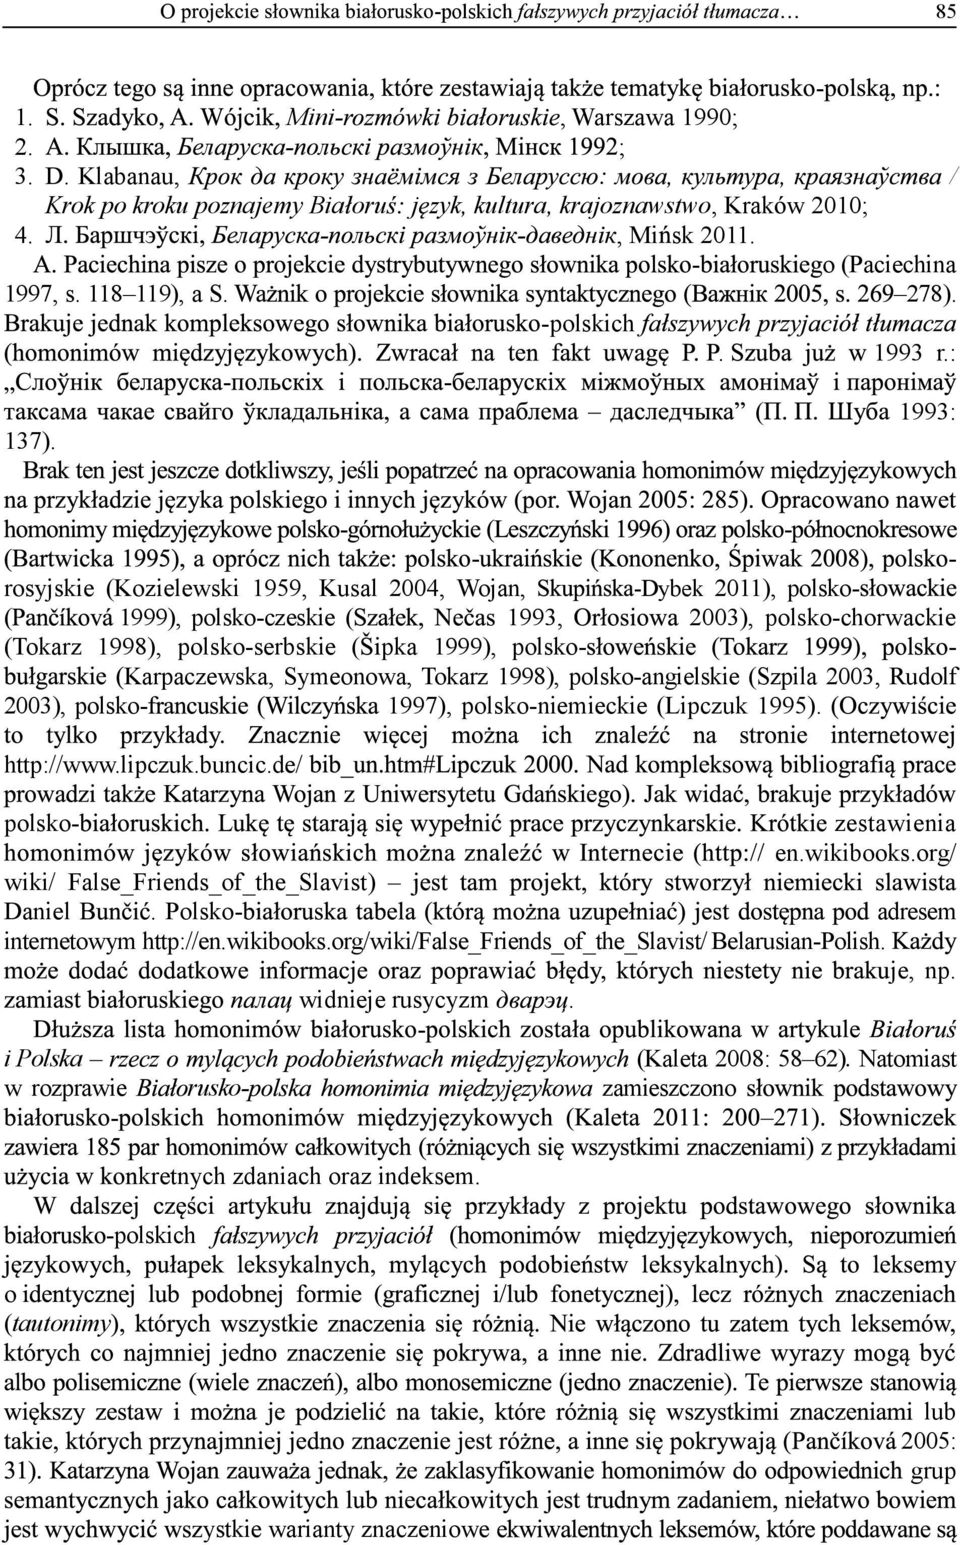 - rosyjskie (Kozielewski 1959, Kusal 2004, Wojan, -Dybek 2011), polsko( 1999), polsko-czeskie ( 1993, 2003), polsko-chorwackie (Tokarz 1998), polsko-serbskie ( pka 1999), polskokarpaczewska,